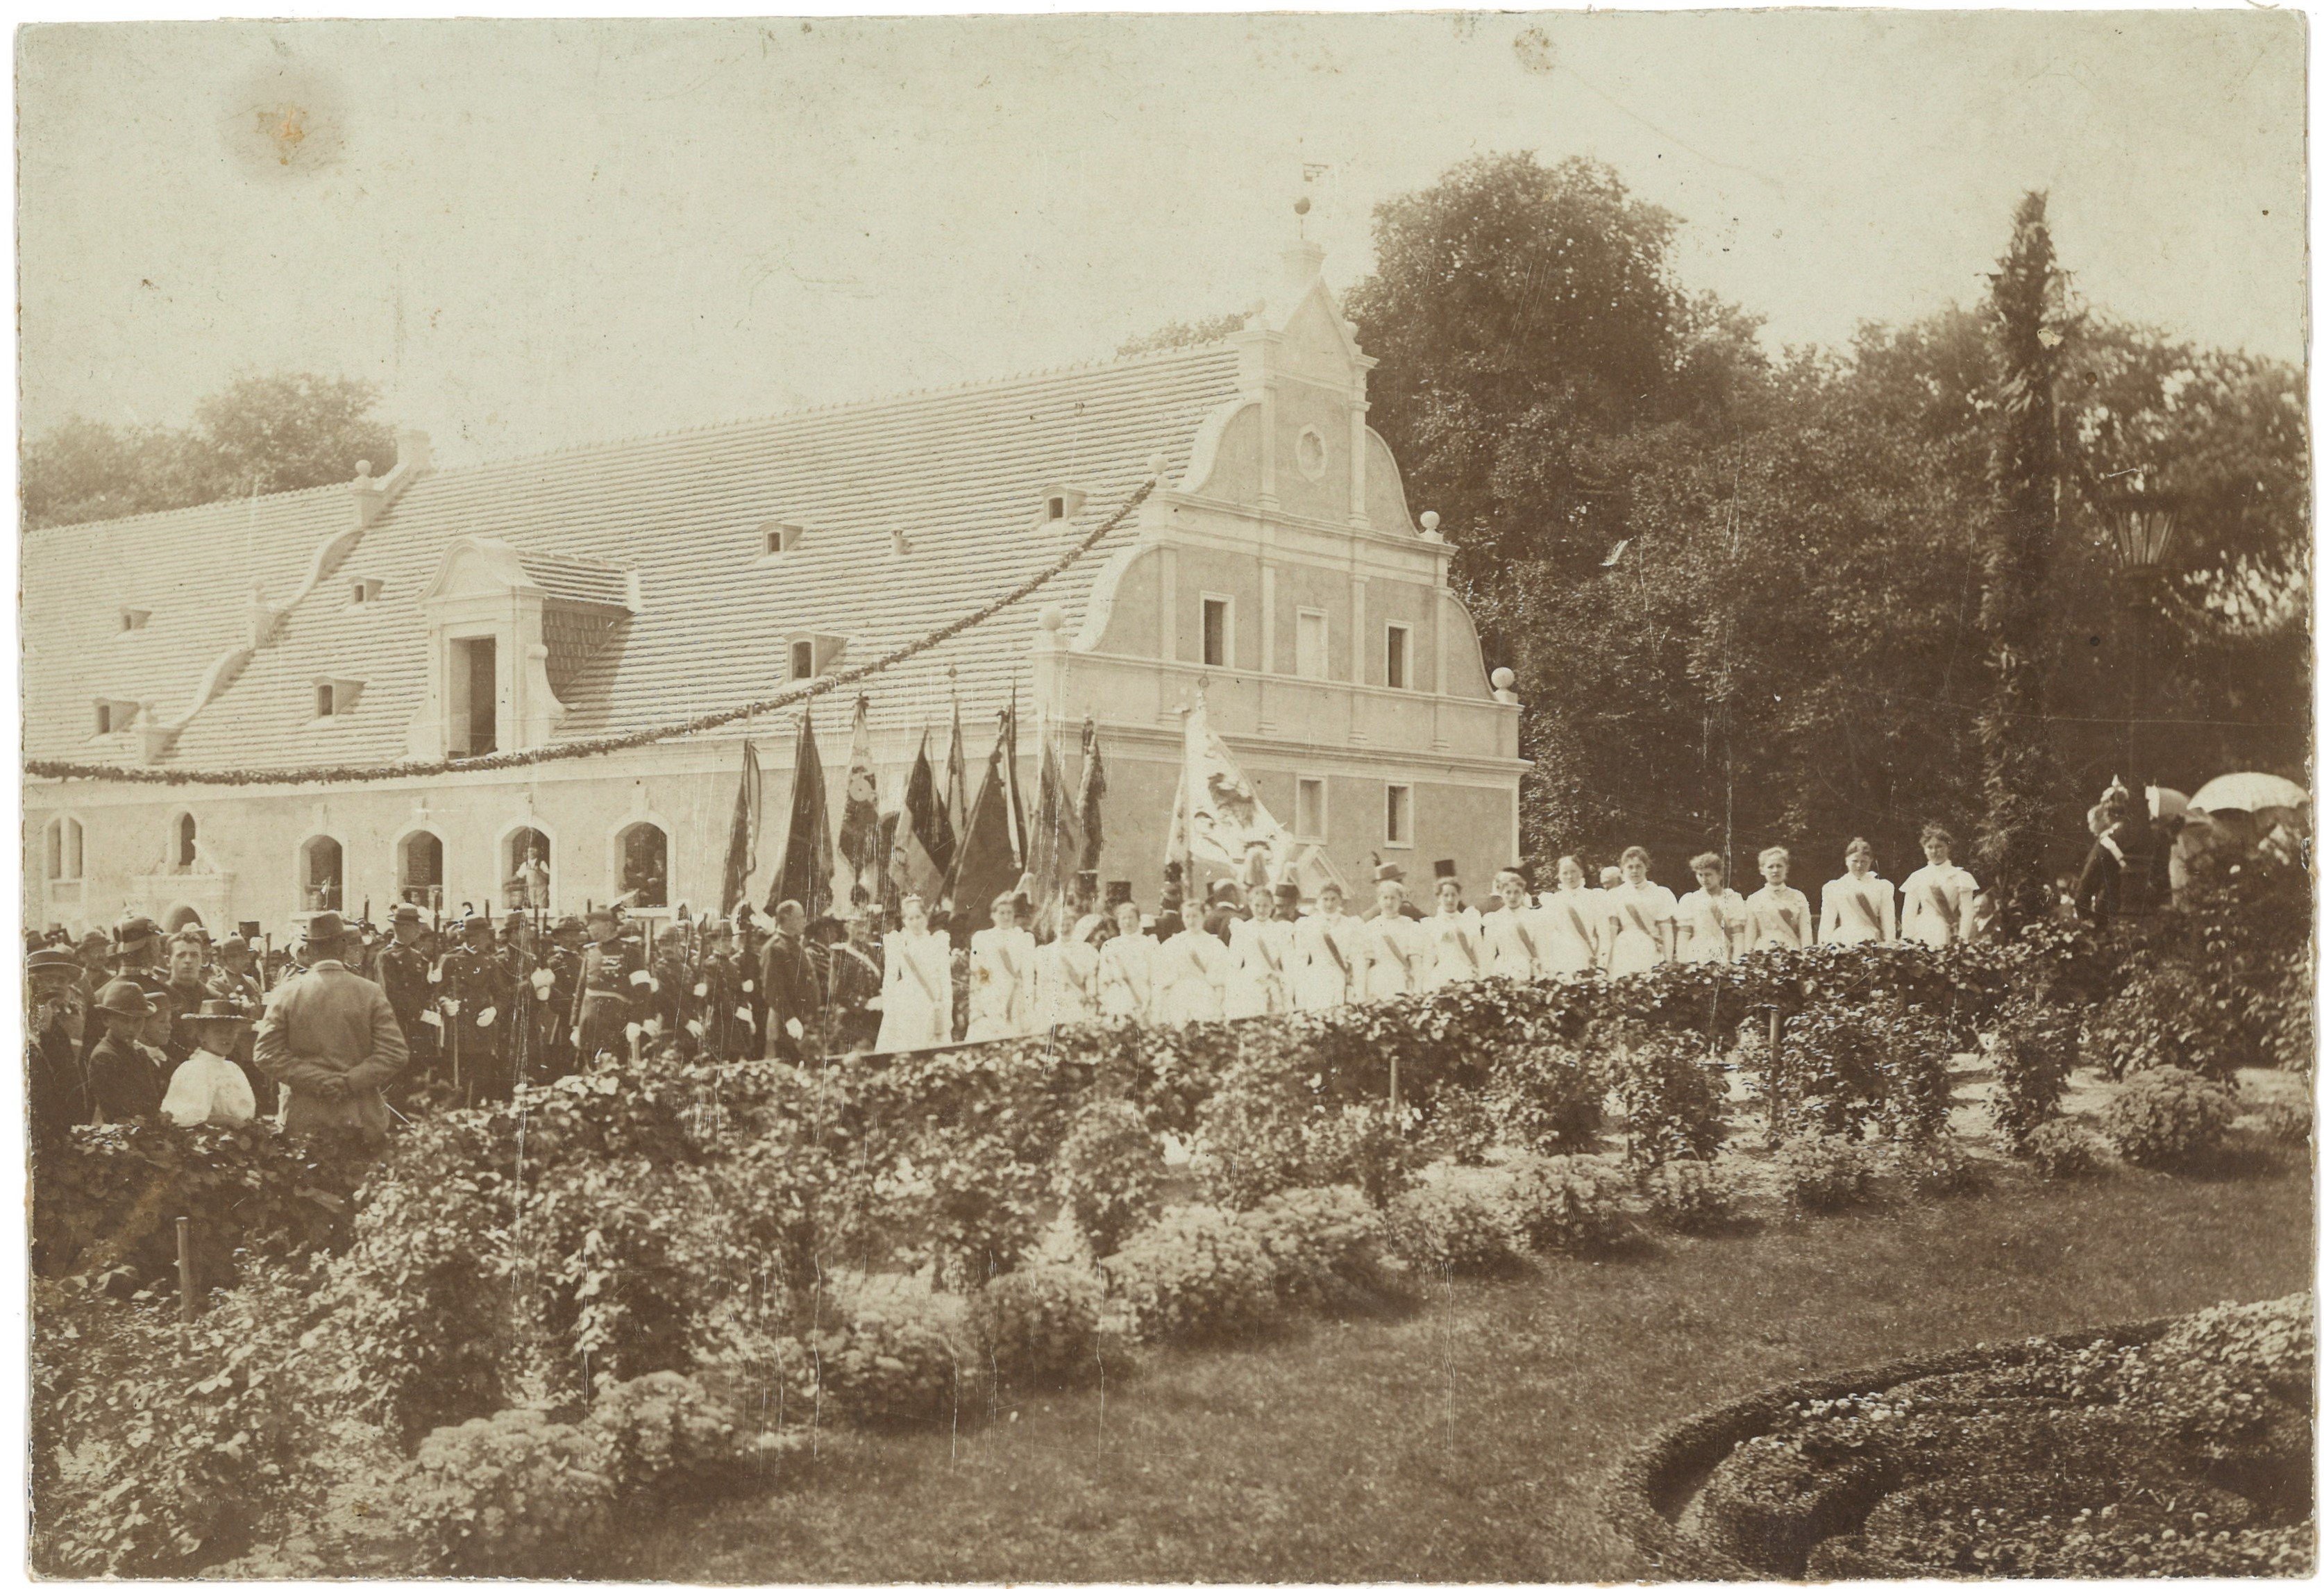 Sonnewalde: Schützenfest am Schlosshof um 1900 (Landesgeschichtliche Vereinigung für die Mark Brandenburg e.V., Archiv CC BY)